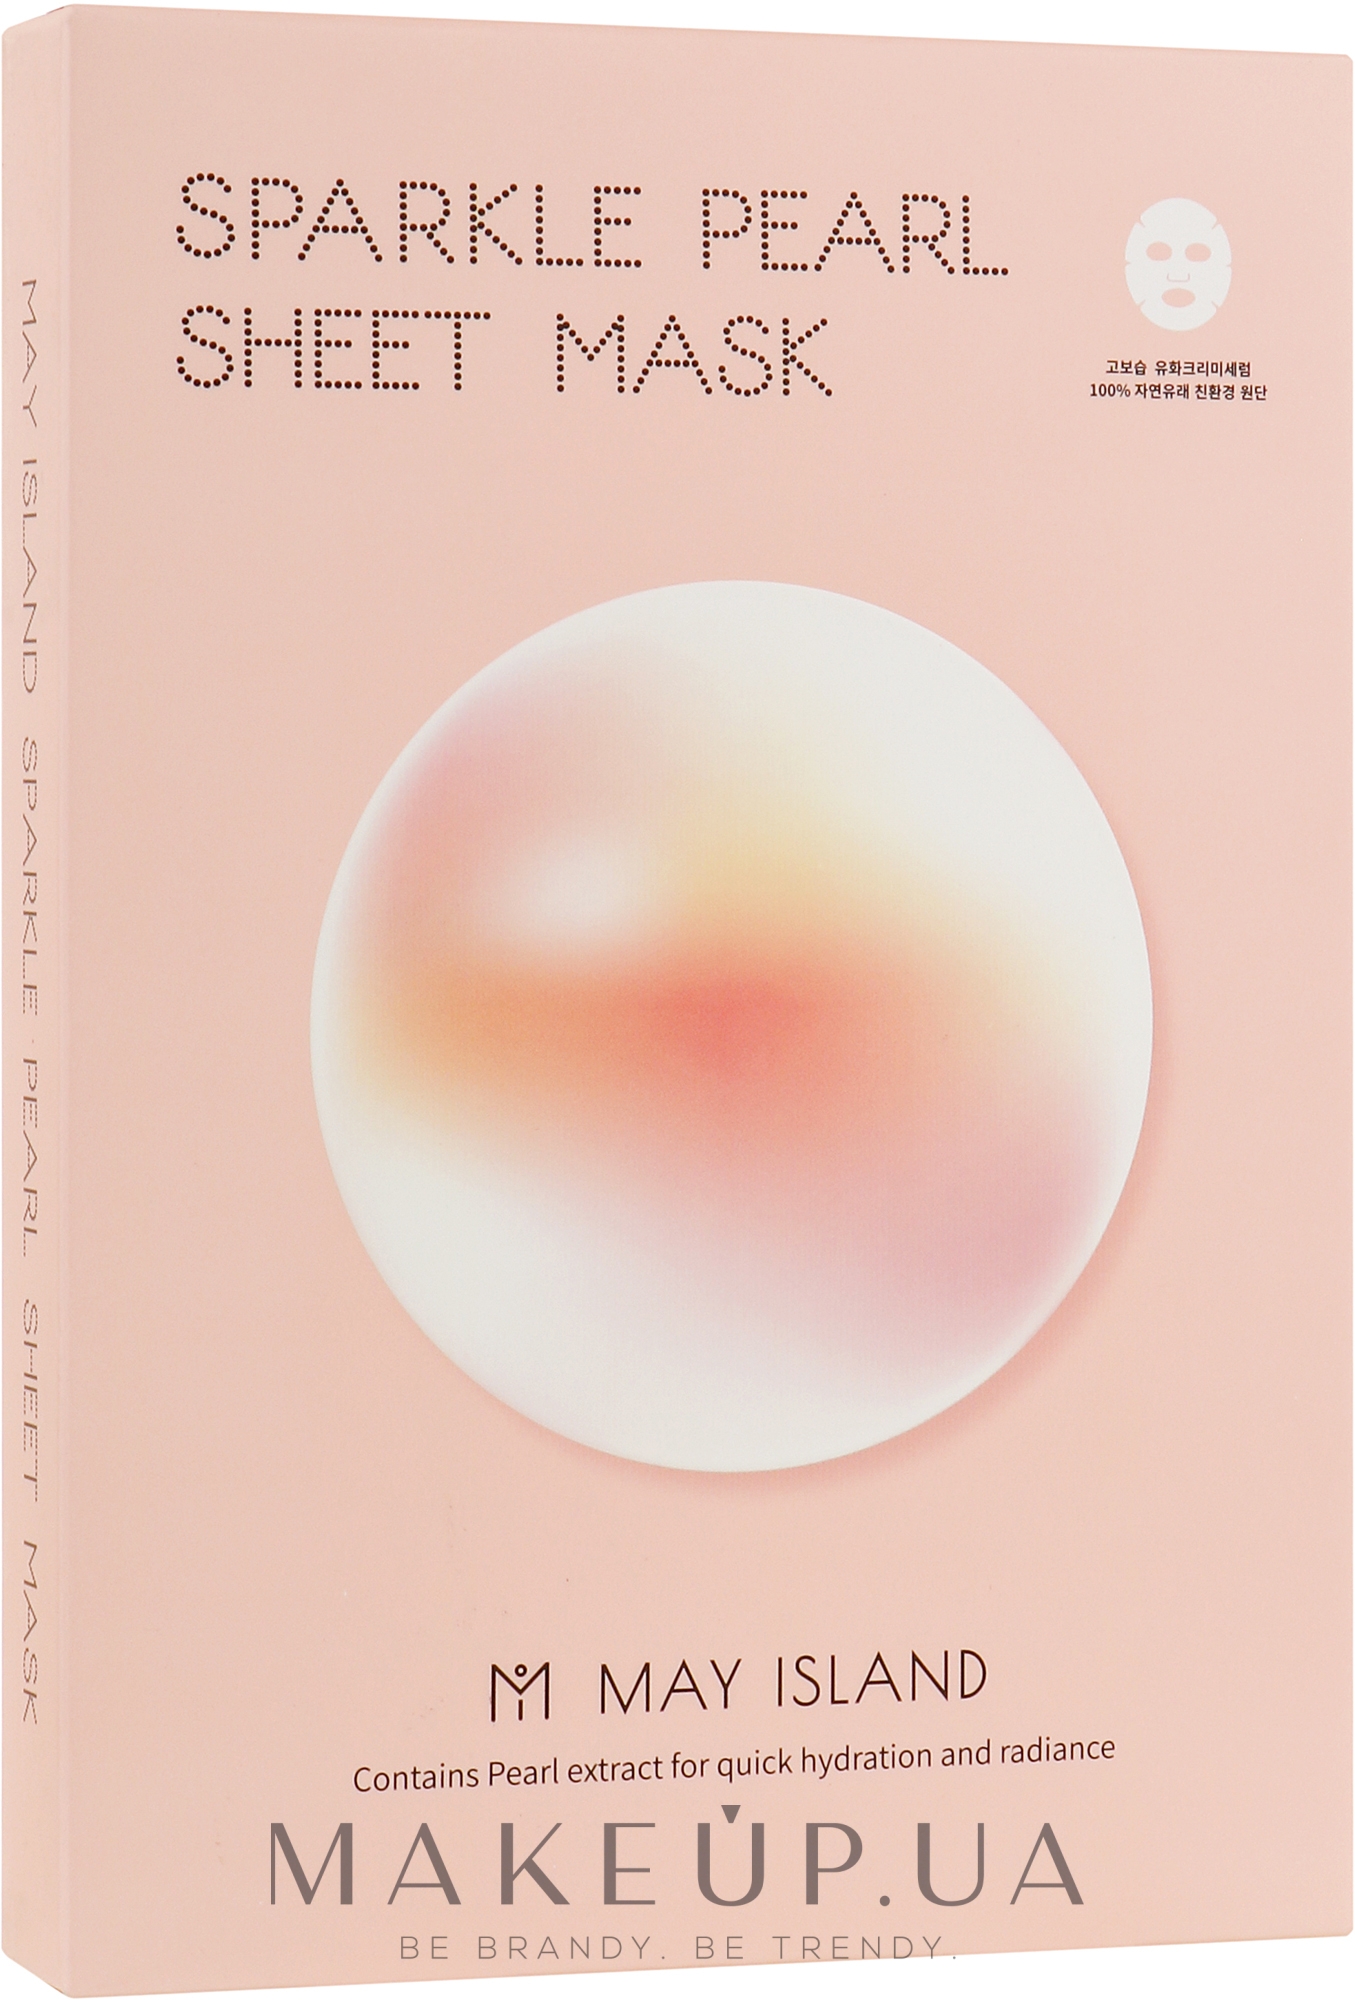 Тканевая маска для сияния кожи с жемчугом - Sparkle Pearl Sheet Mask — фото 5x30ml